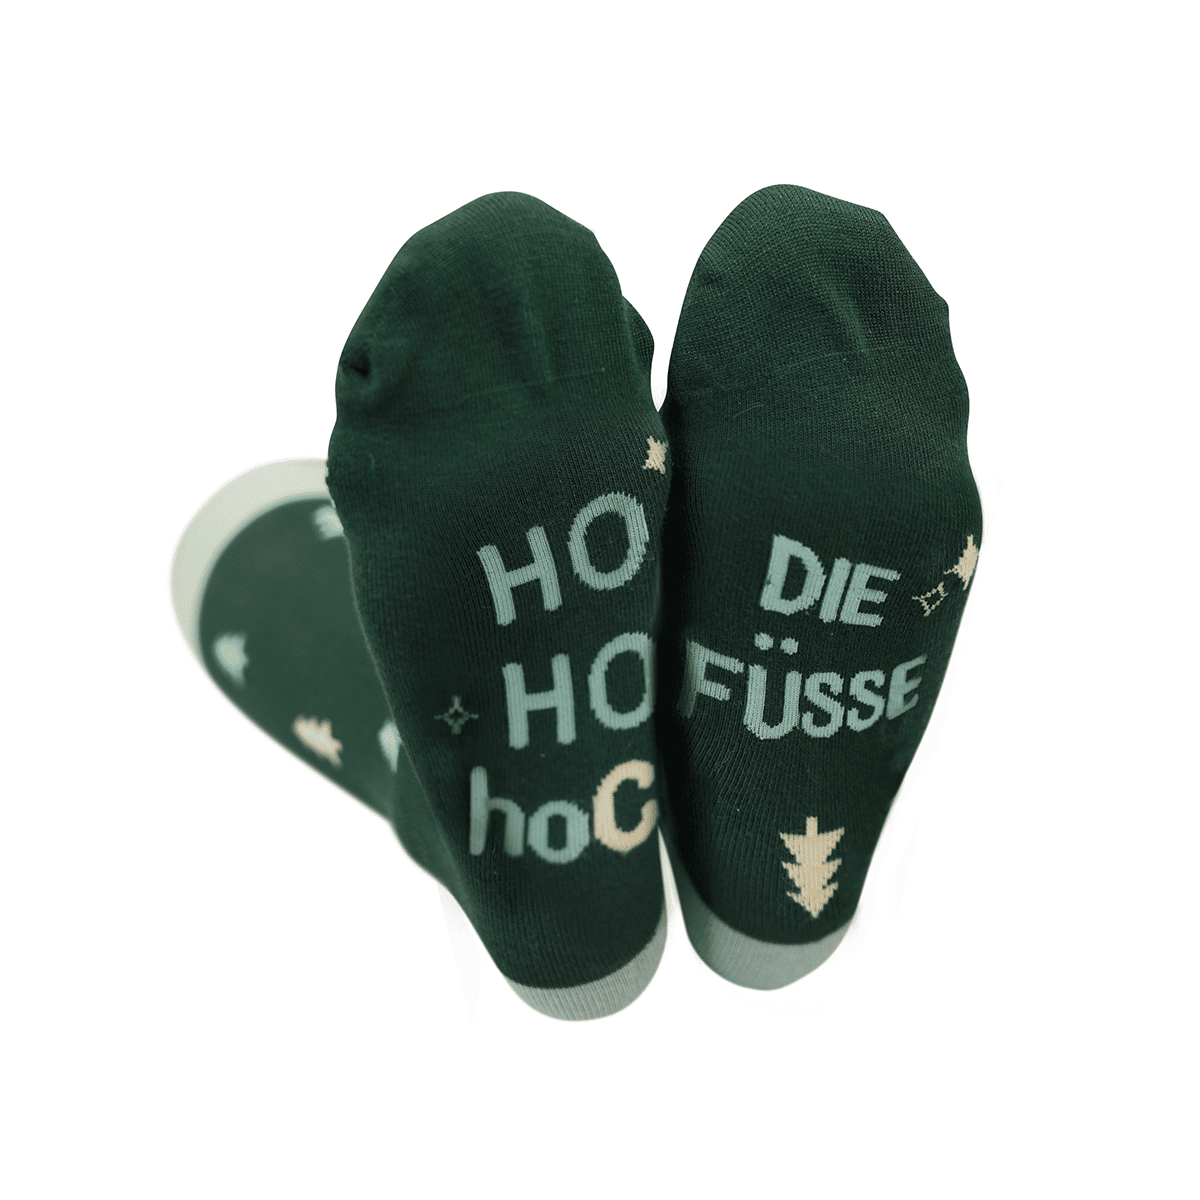 Coole Socke – Weihnachtssocken verschiedene Designs (Herren)